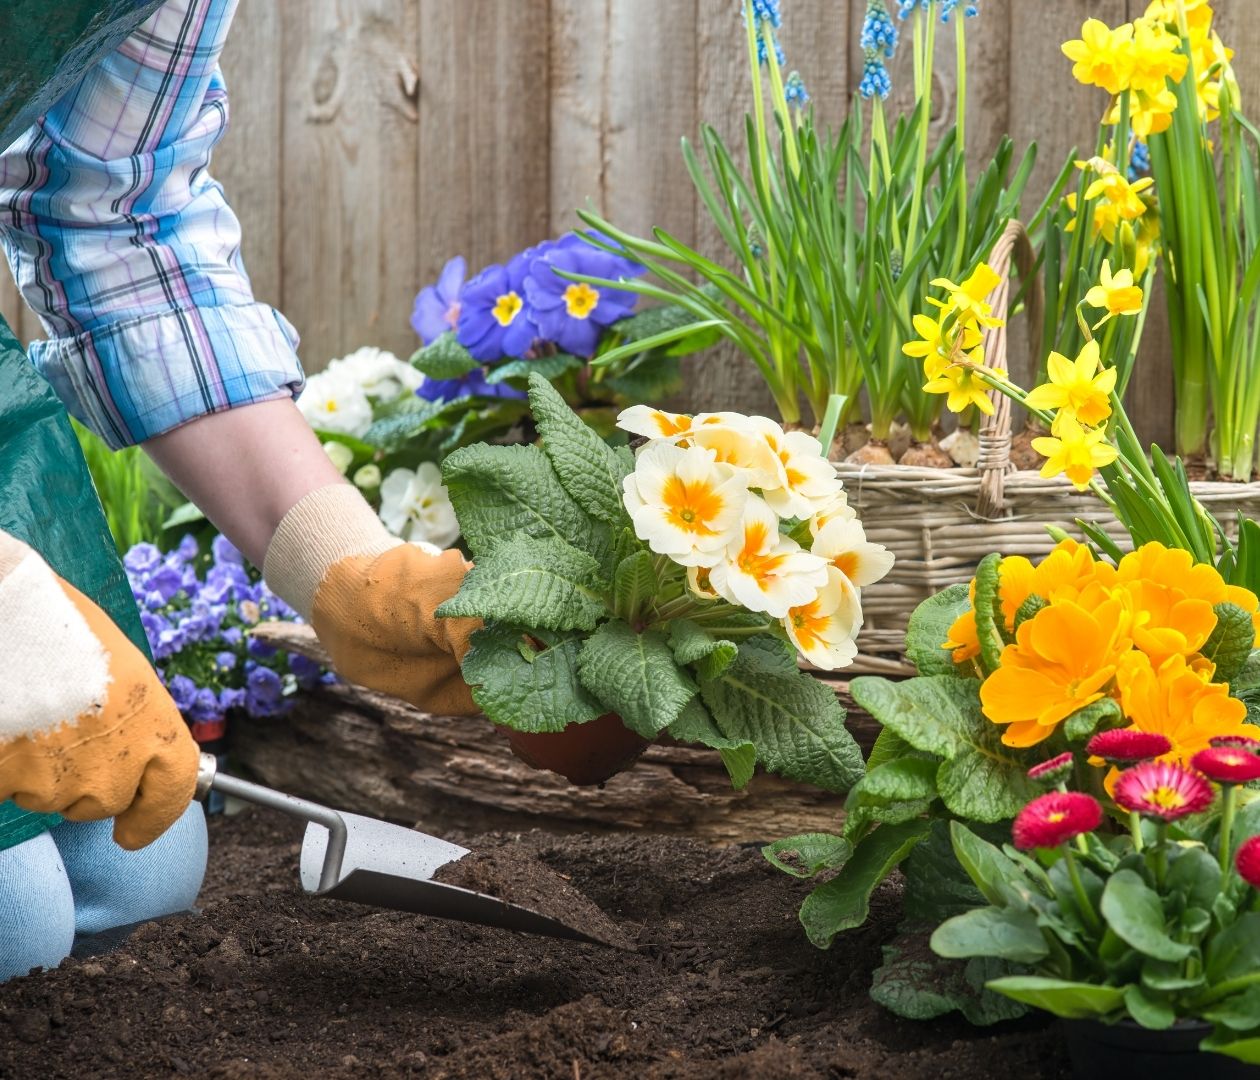 Gardening in a flowerbed